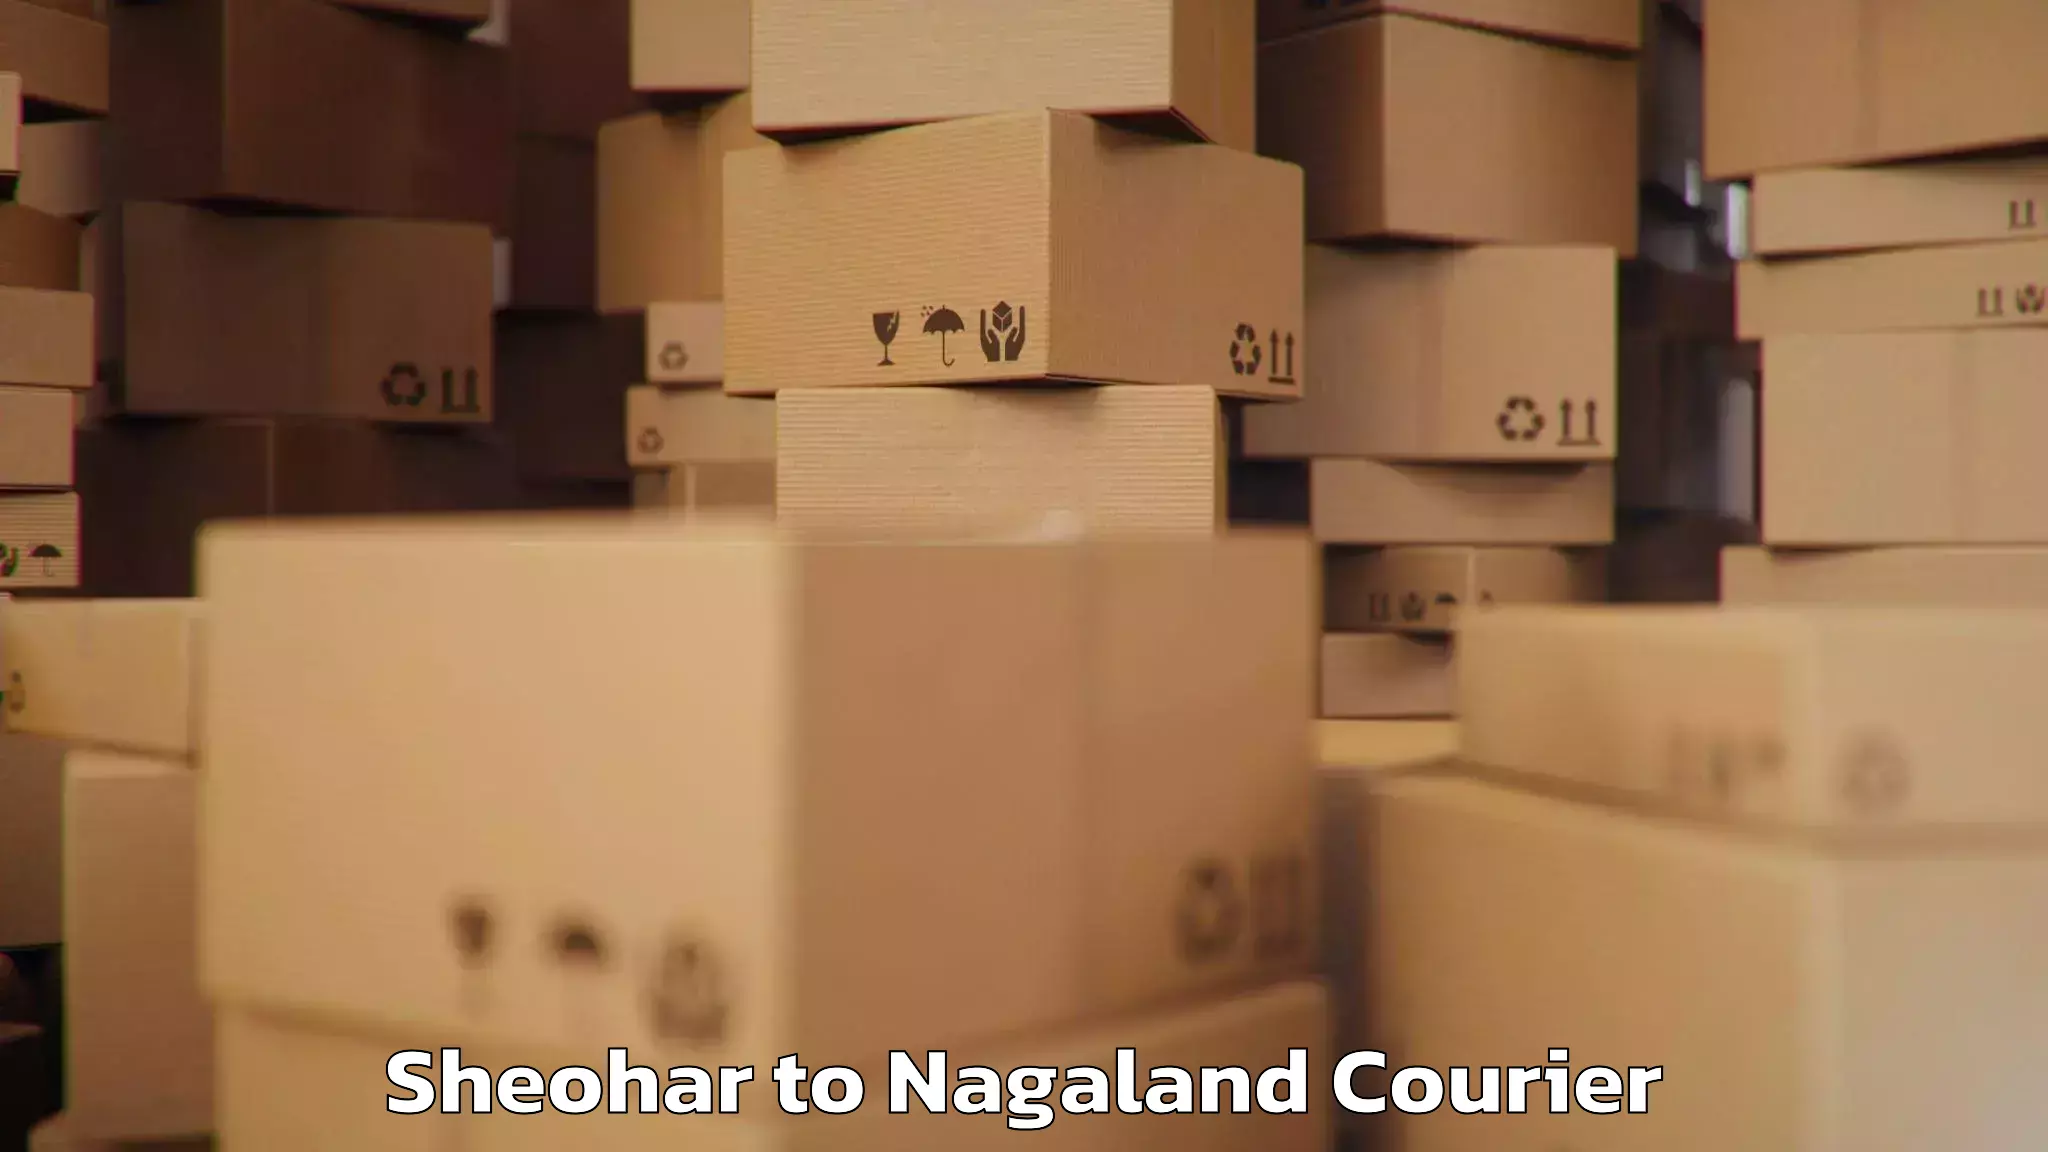 Baggage transport scheduler Sheohar to Nagaland